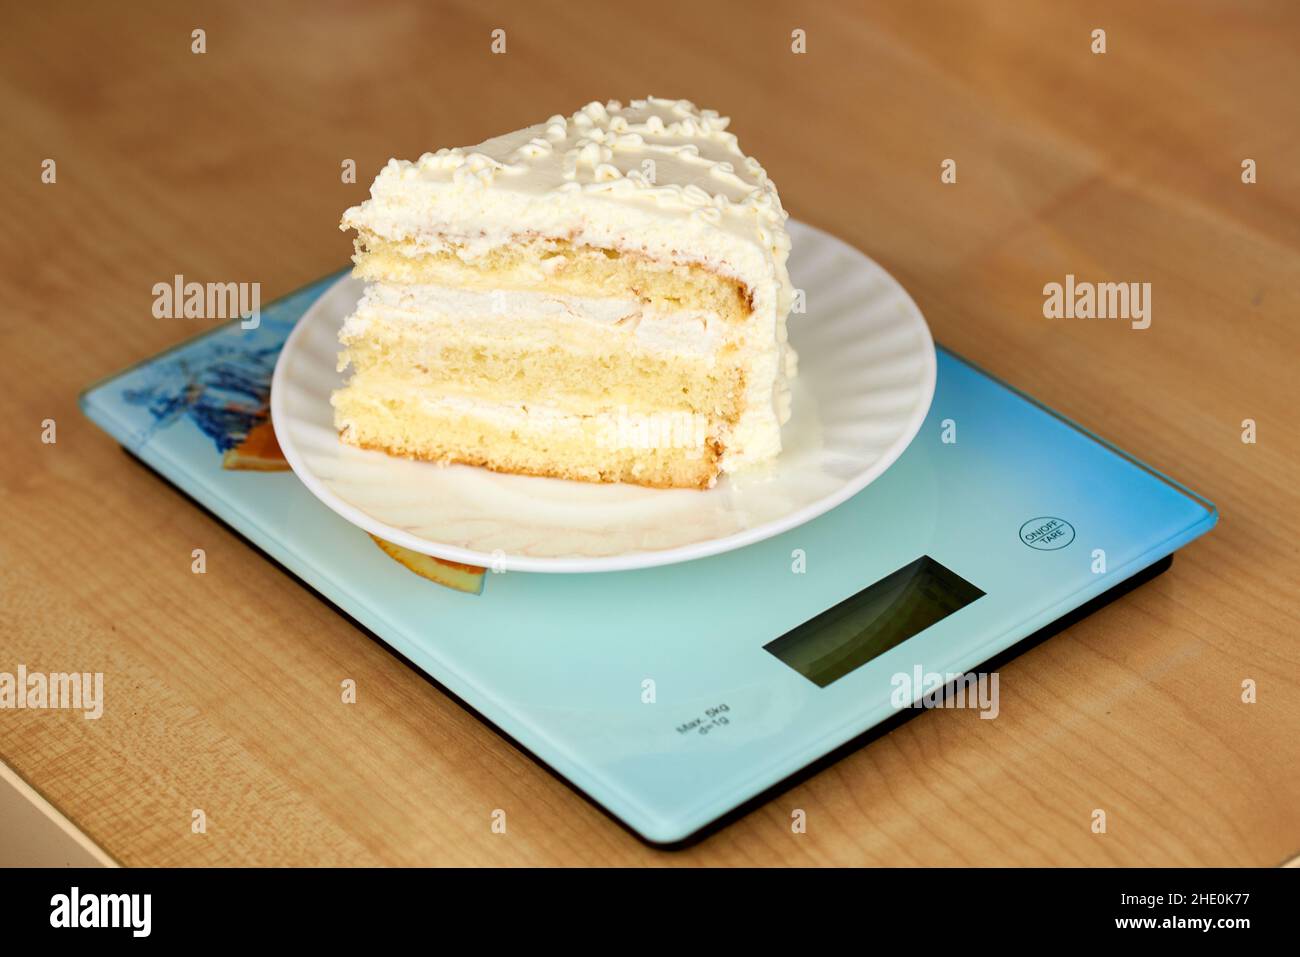 Un pezzo di deliziosa torta con crema di burro bianco si trova sulle scaglie. Concetto di conteggio delle calorie, tracciamento delle cifre Foto Stock